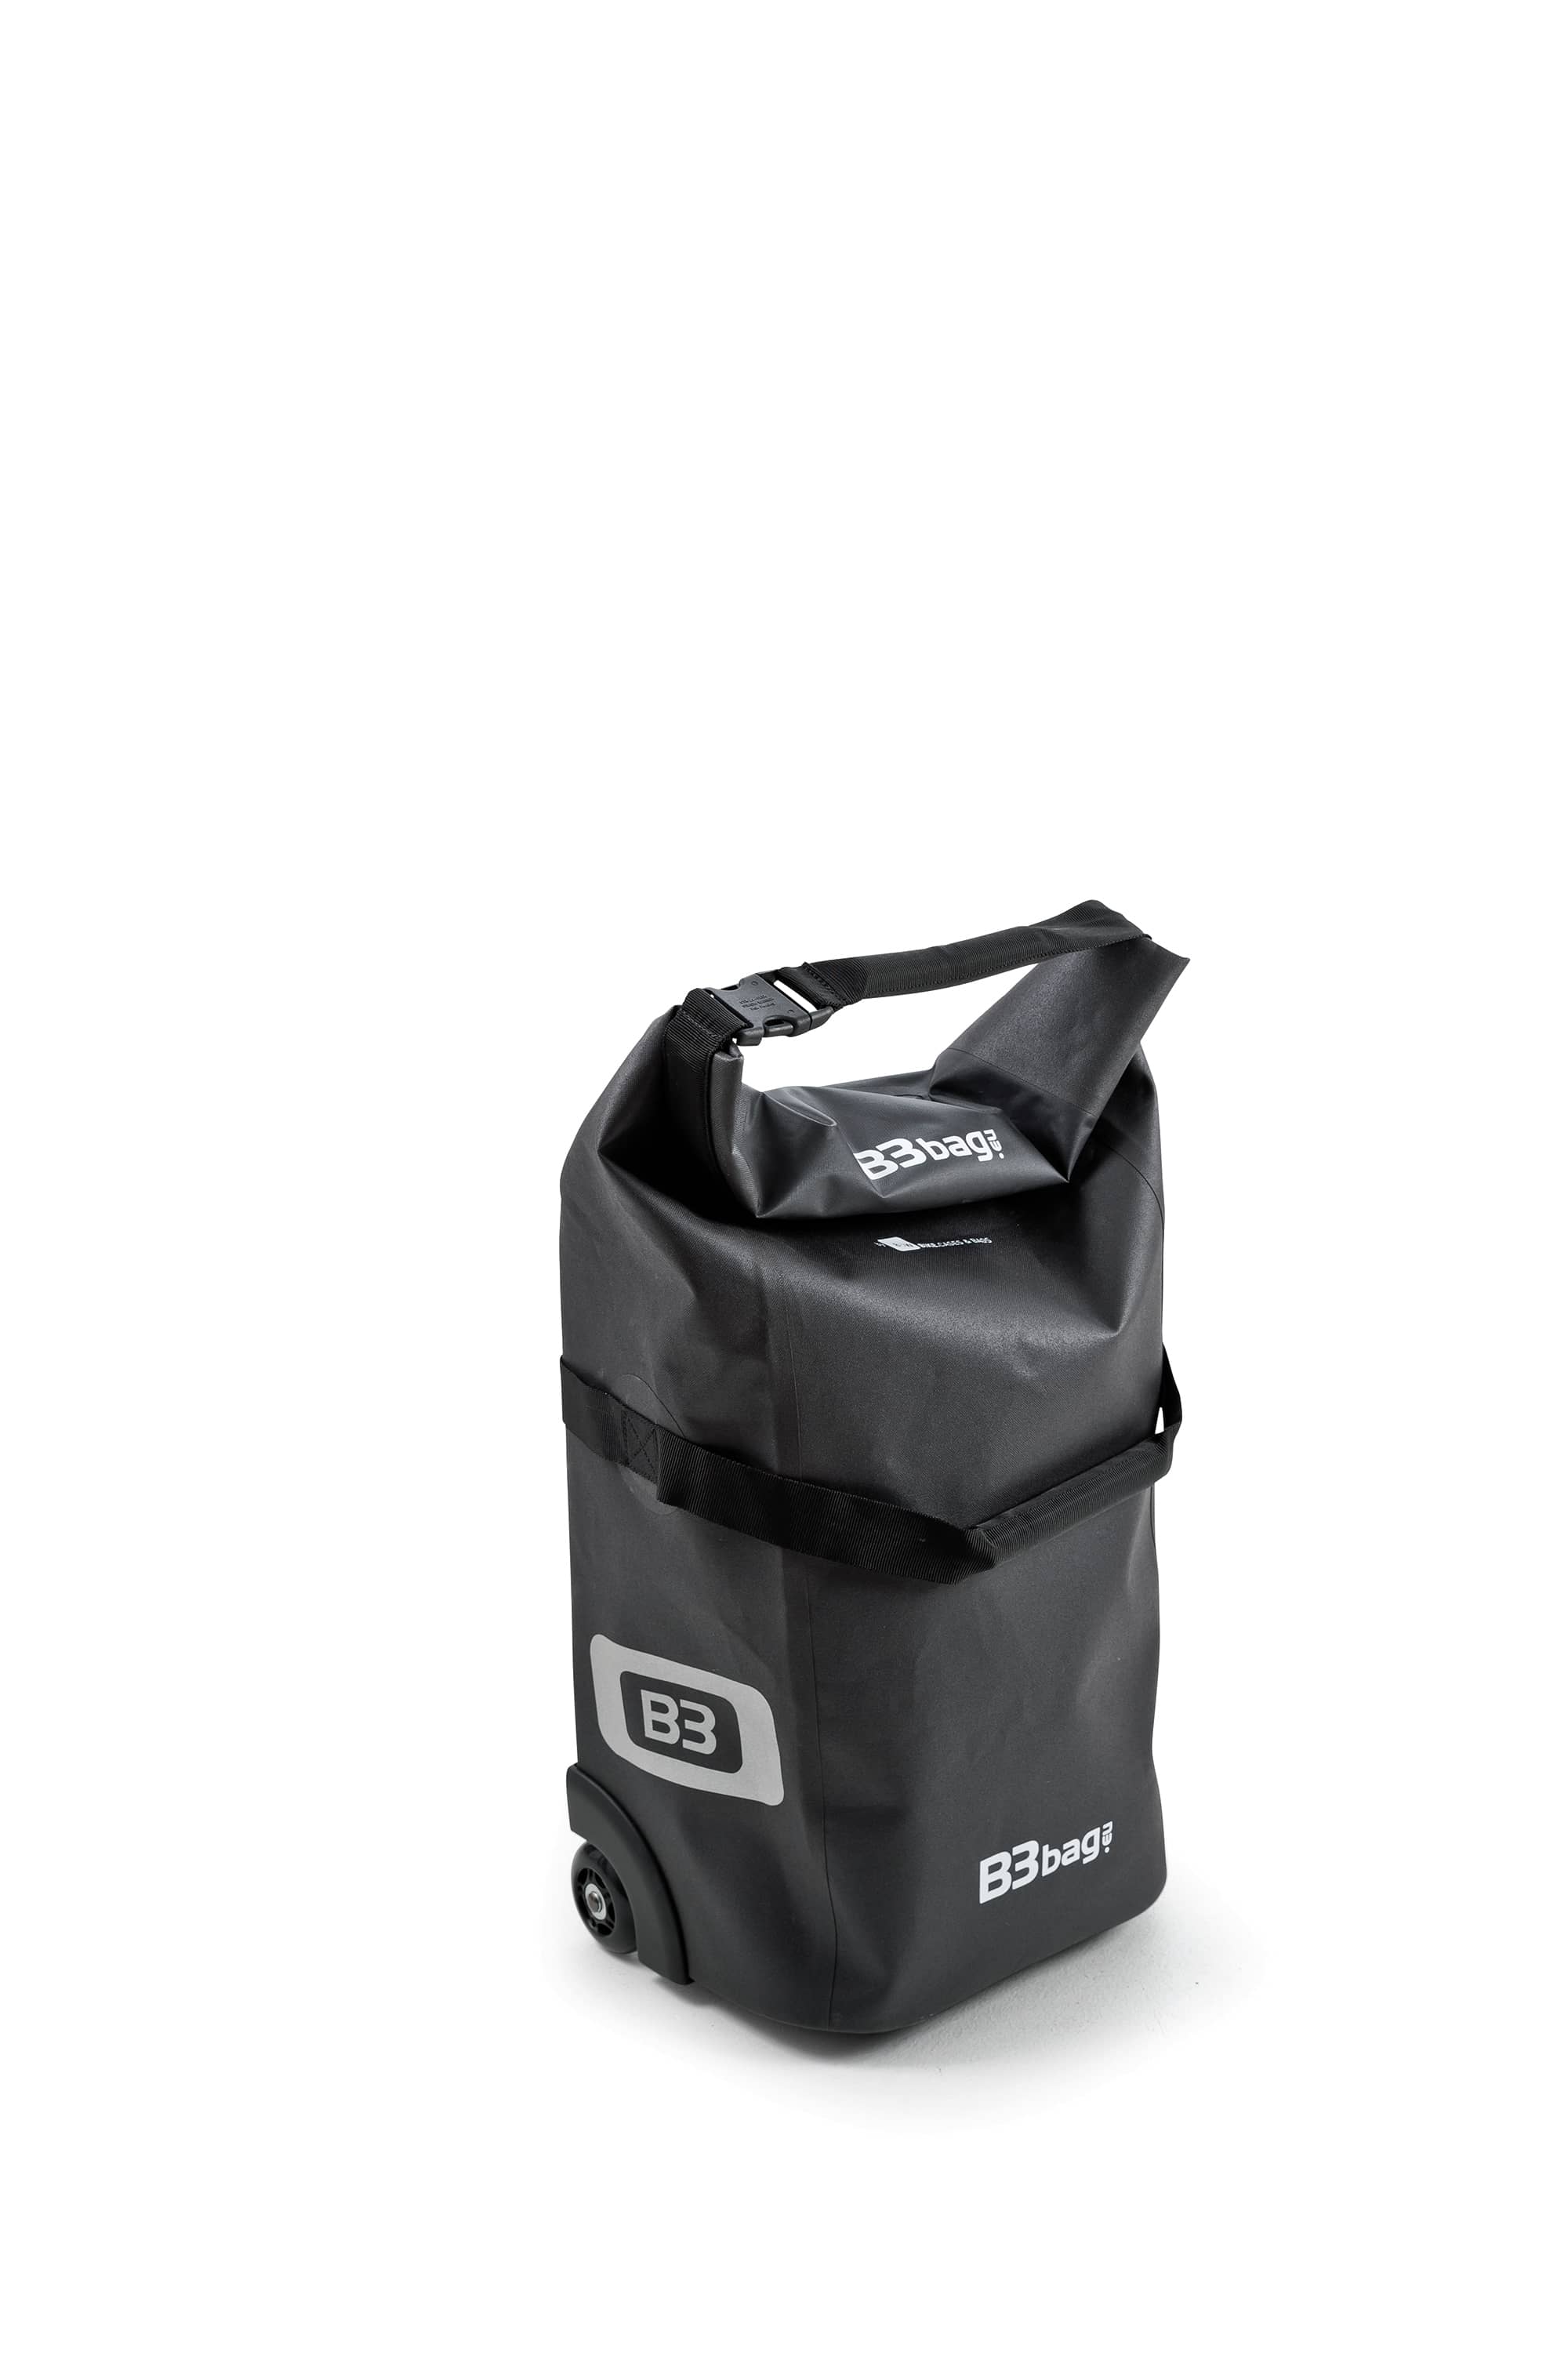 B&W B3 bag | Farbe schwarz